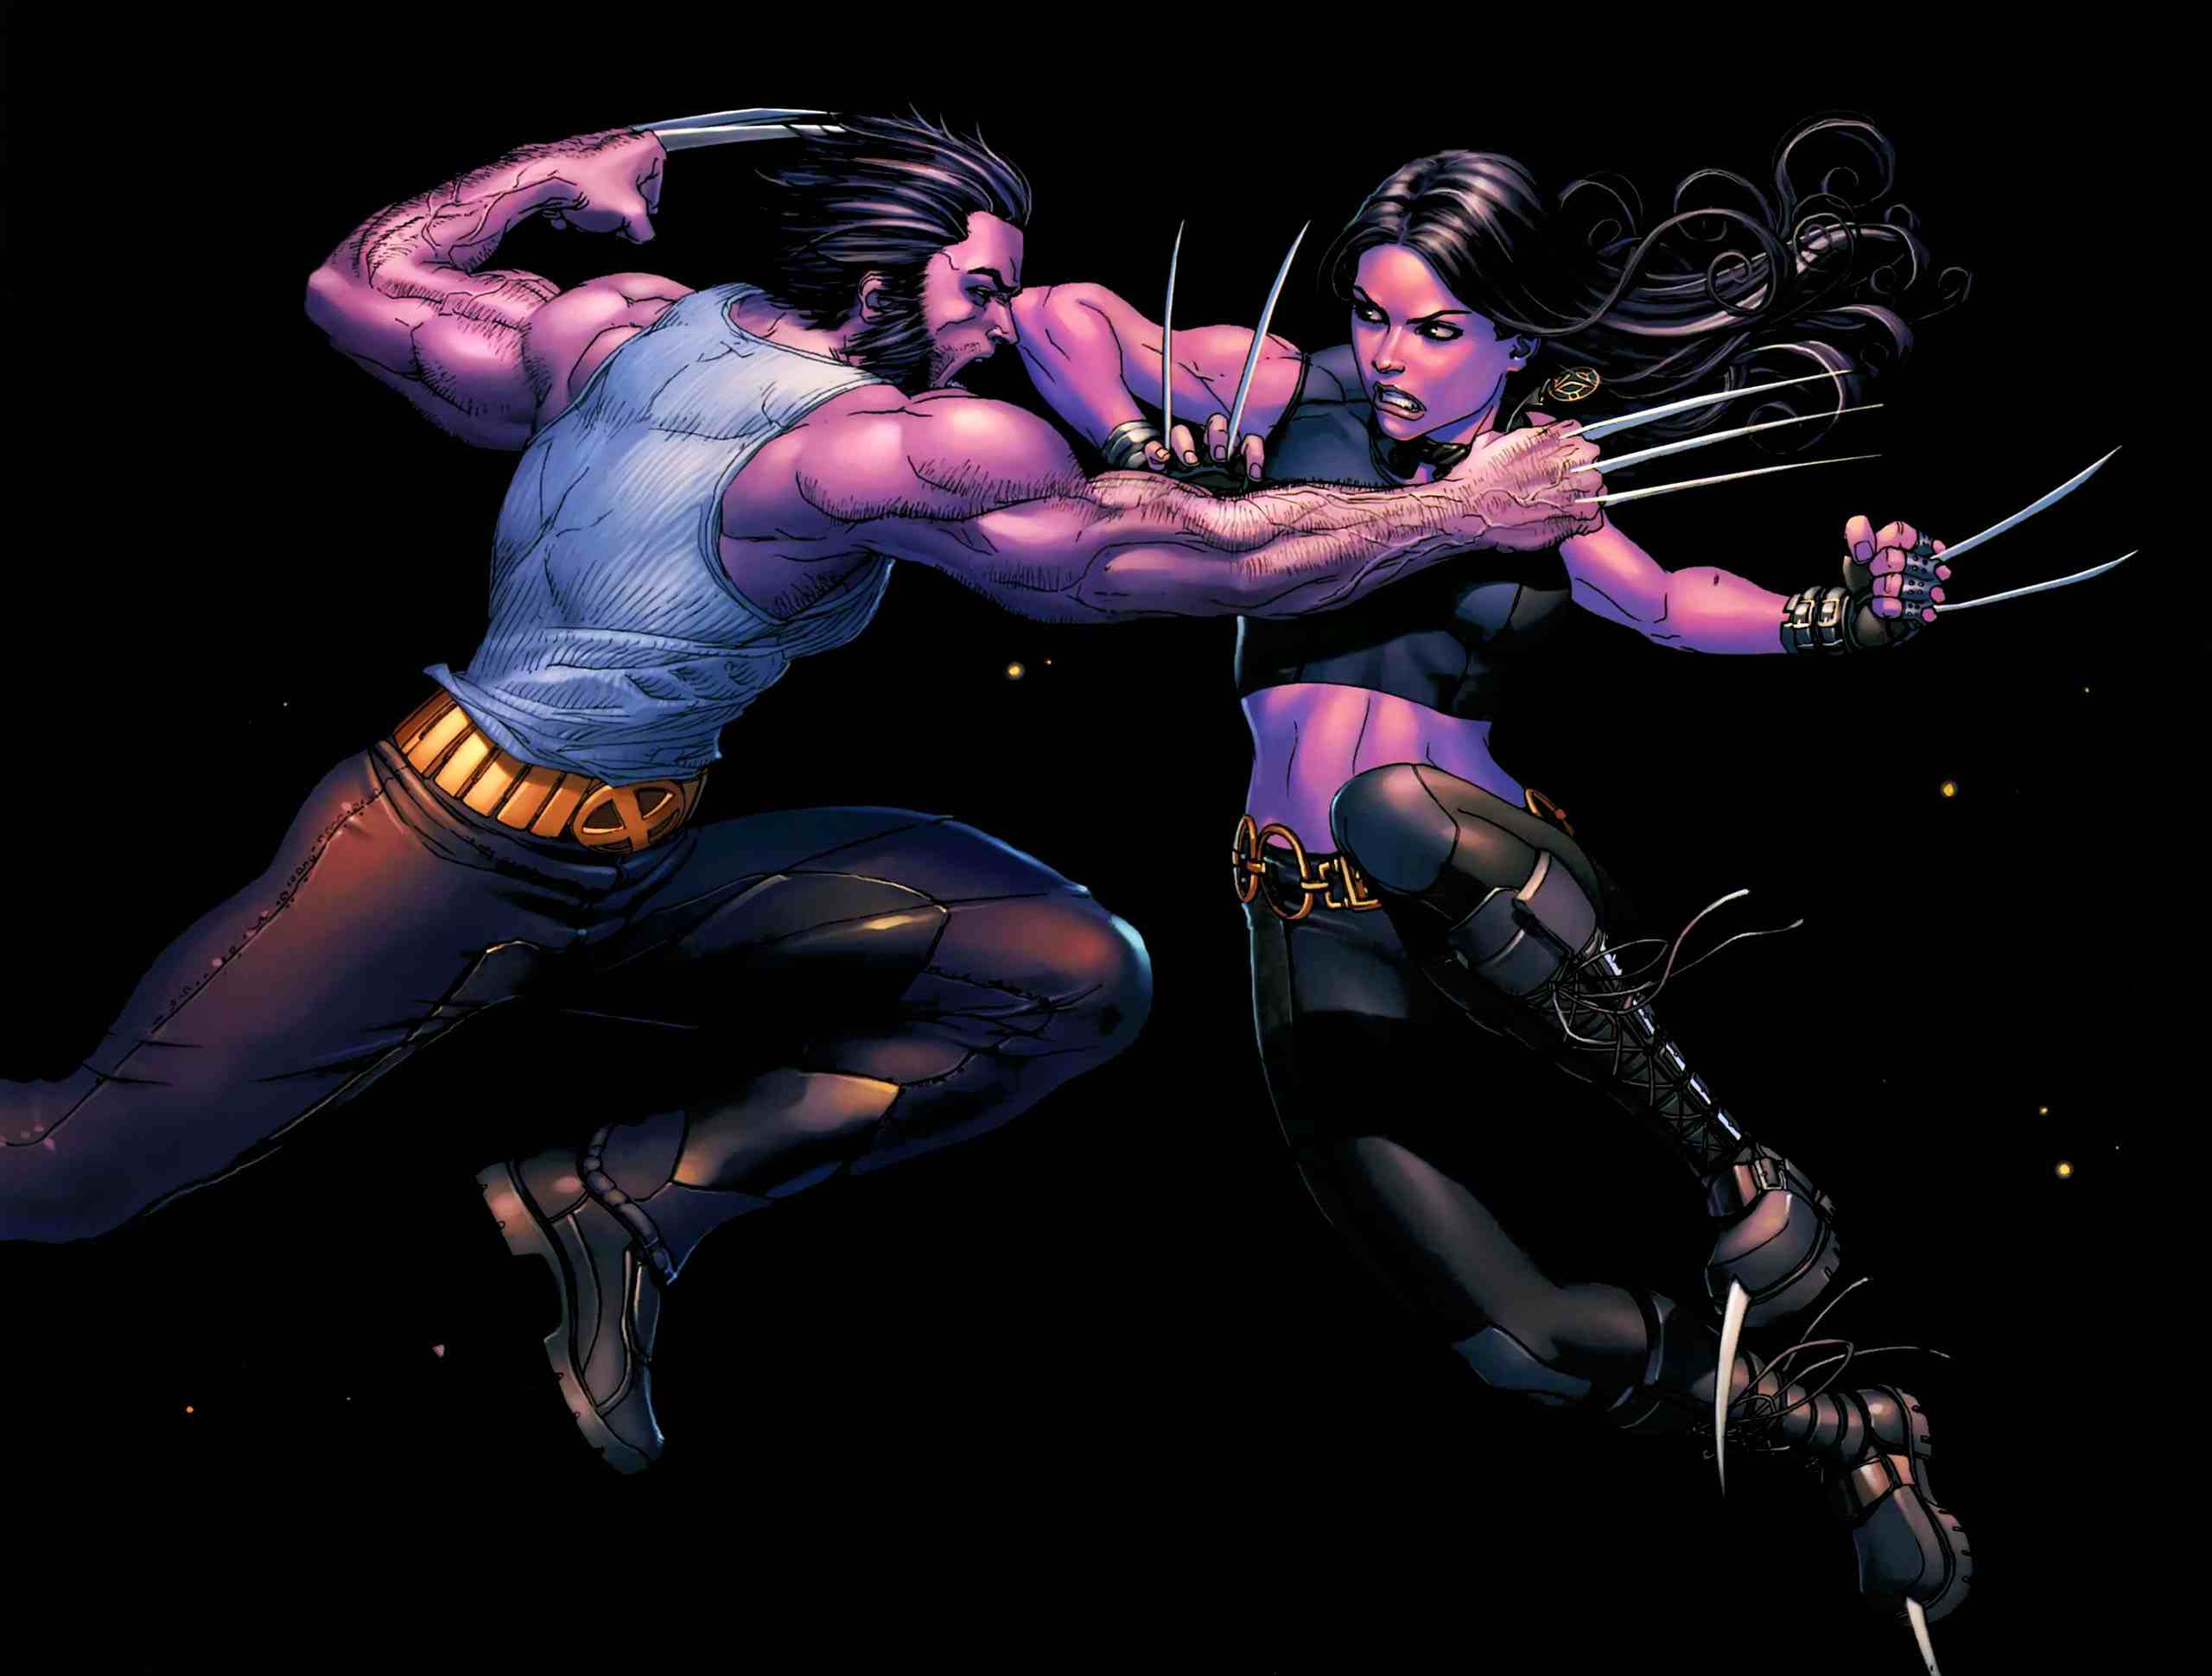 comics, X-Men, Wolverine, superheroes, artwork, Marvel Comics, comics girls, X-23 - desktop wallpaper